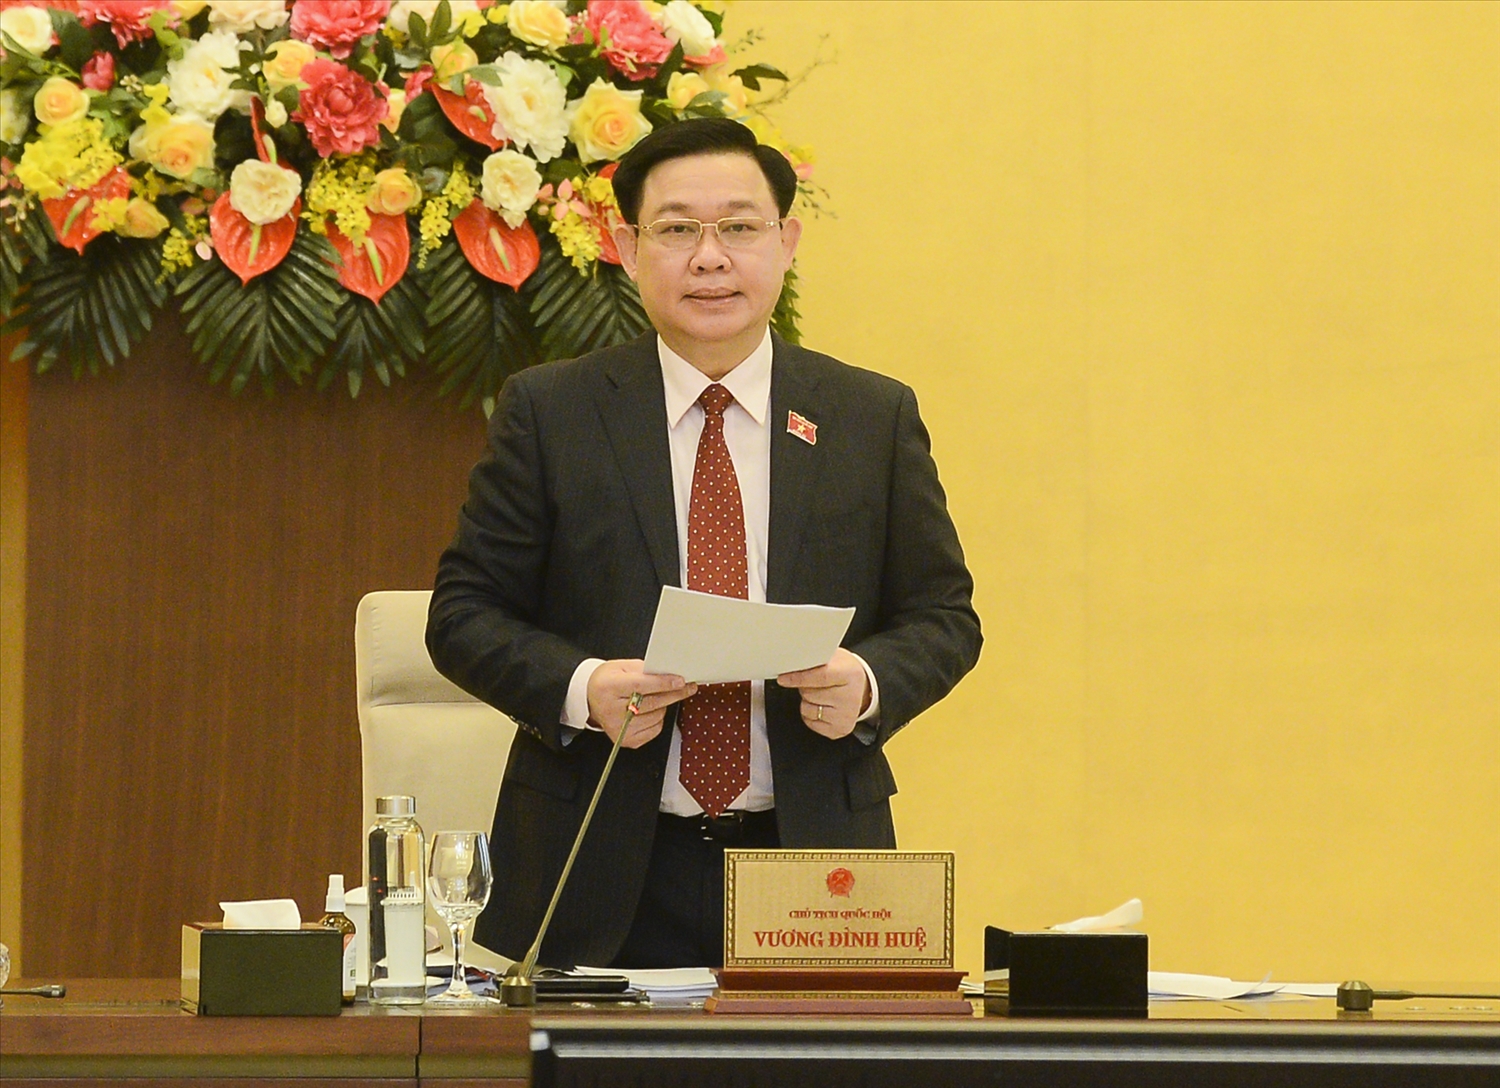 Chủ tịch Quốc hội Vương Đình Huệ phát biểu khai mạc phiên họp